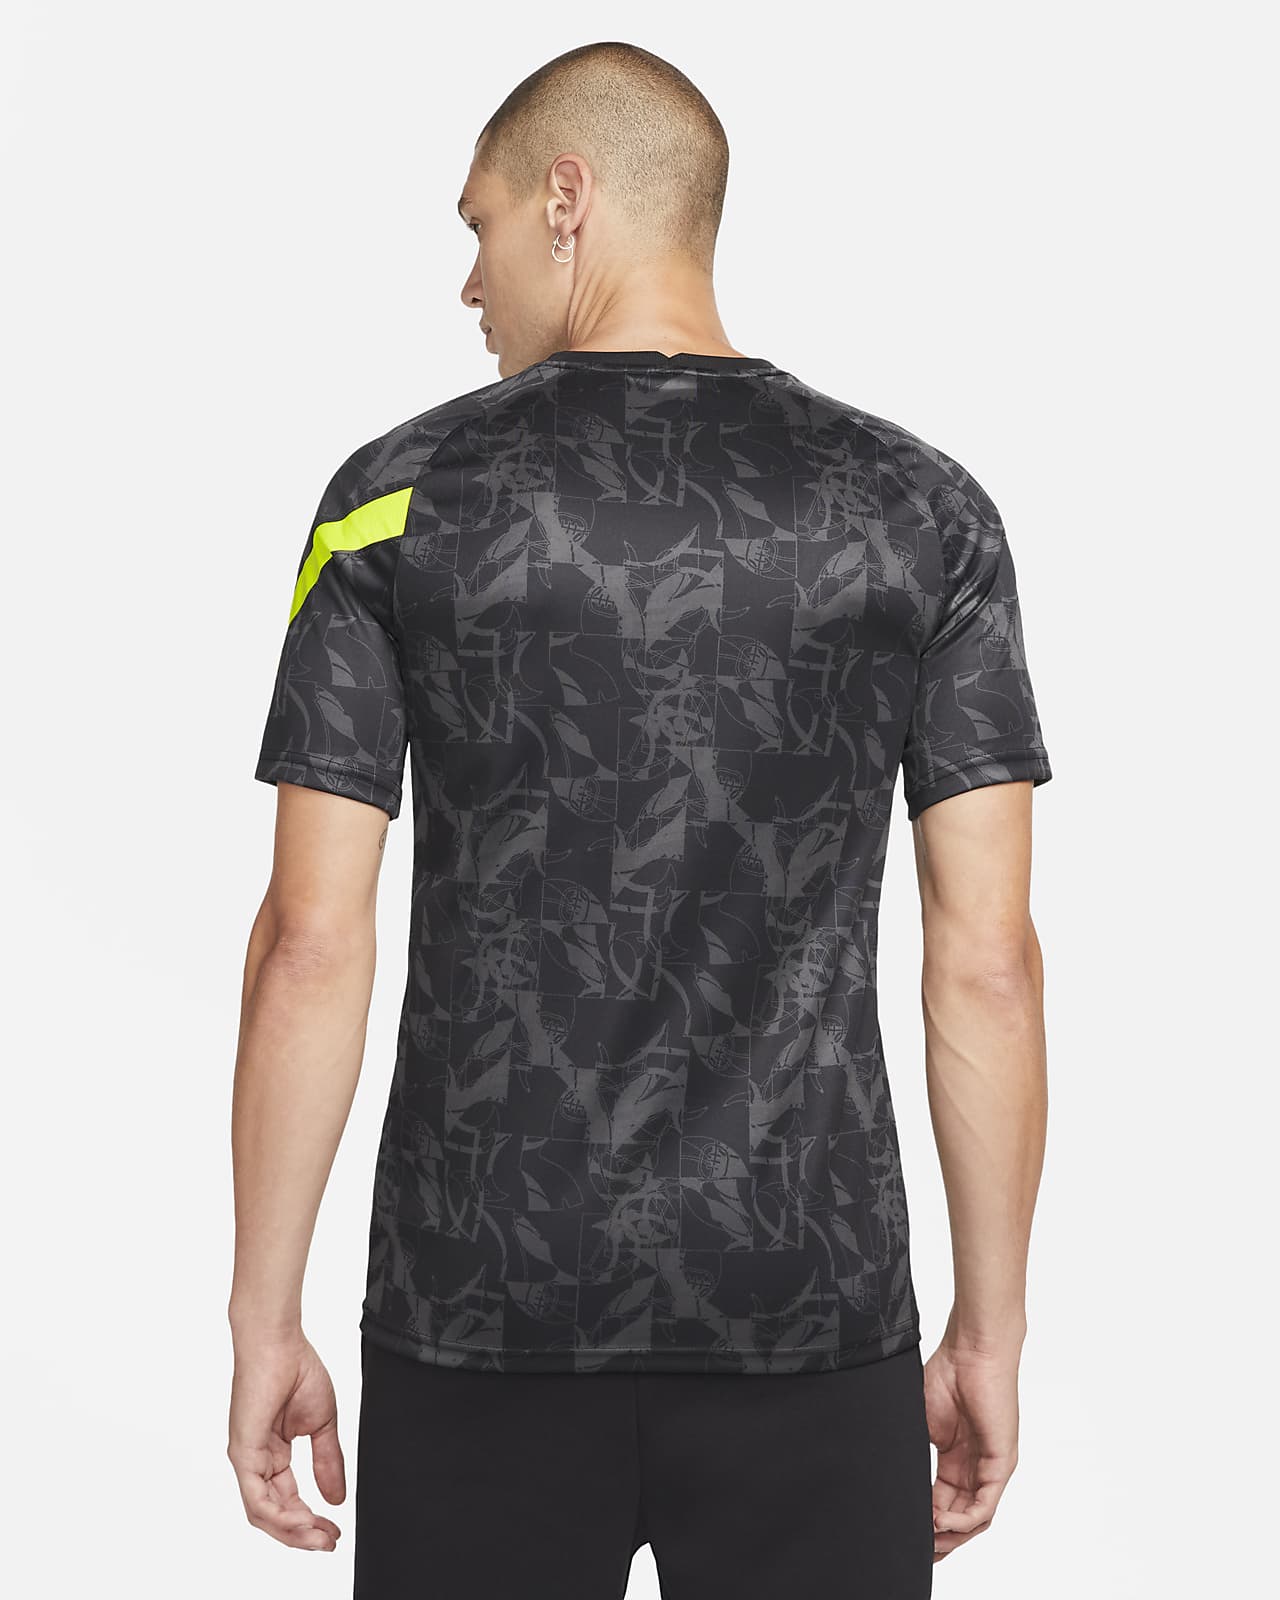 Nike Tottenham Men's Nike Dri-FIT T-Shirt. Nike.com